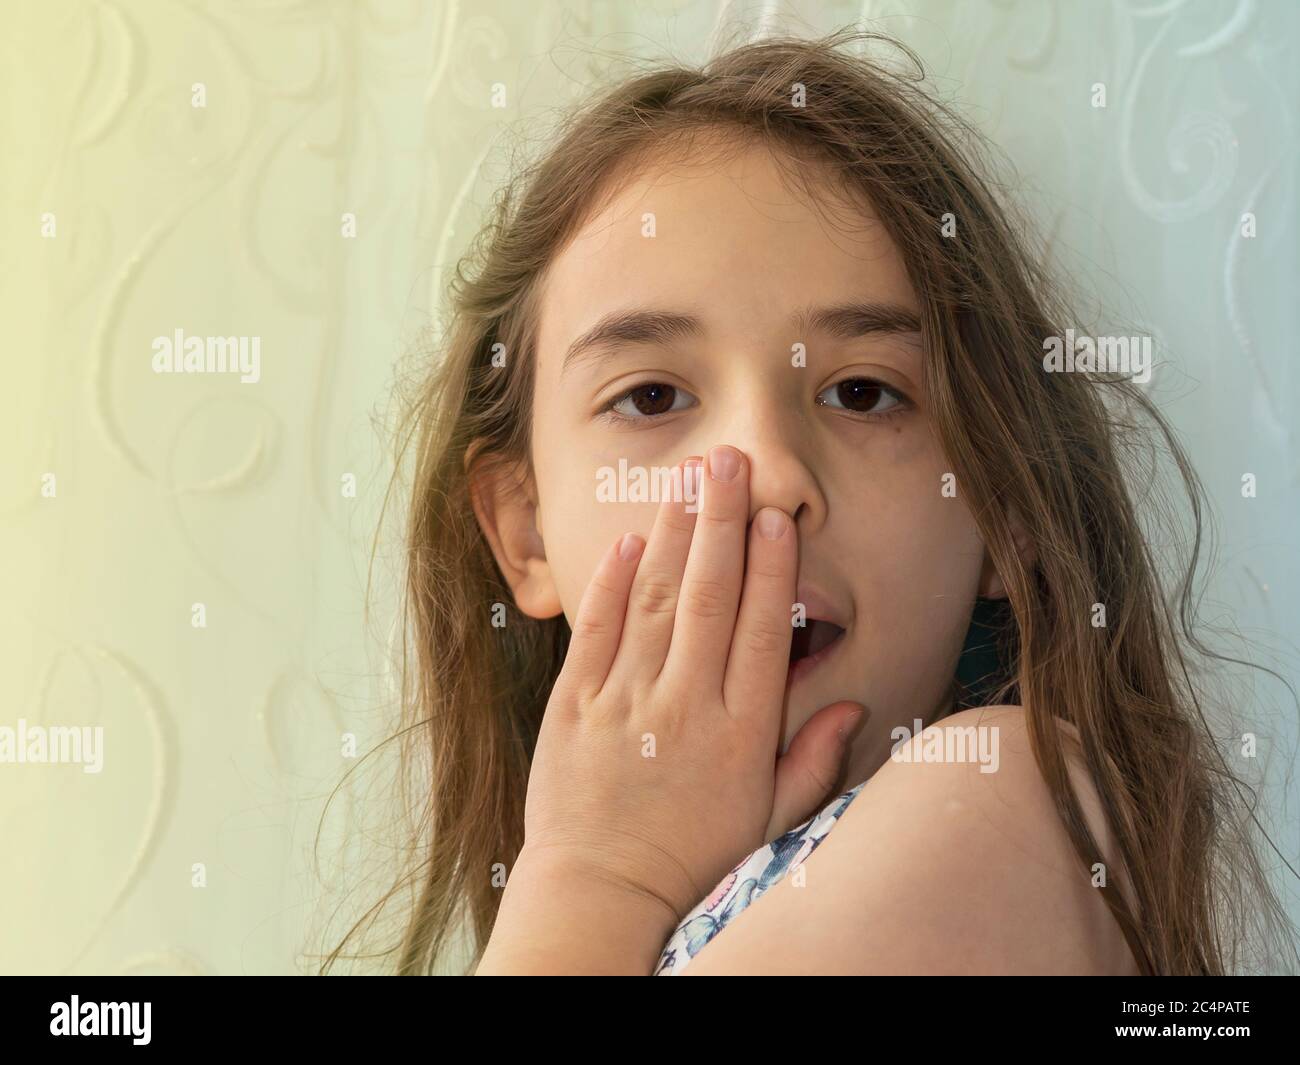 Ein kleines Mädchen schließt ihren eigenen Mund. Erstaunt und überrascht Langhaar Mädchen schließen ihren eigenen Mund mit ihrer eigenen Hand vor dem gelben und blauen Hintergrund Stockfoto